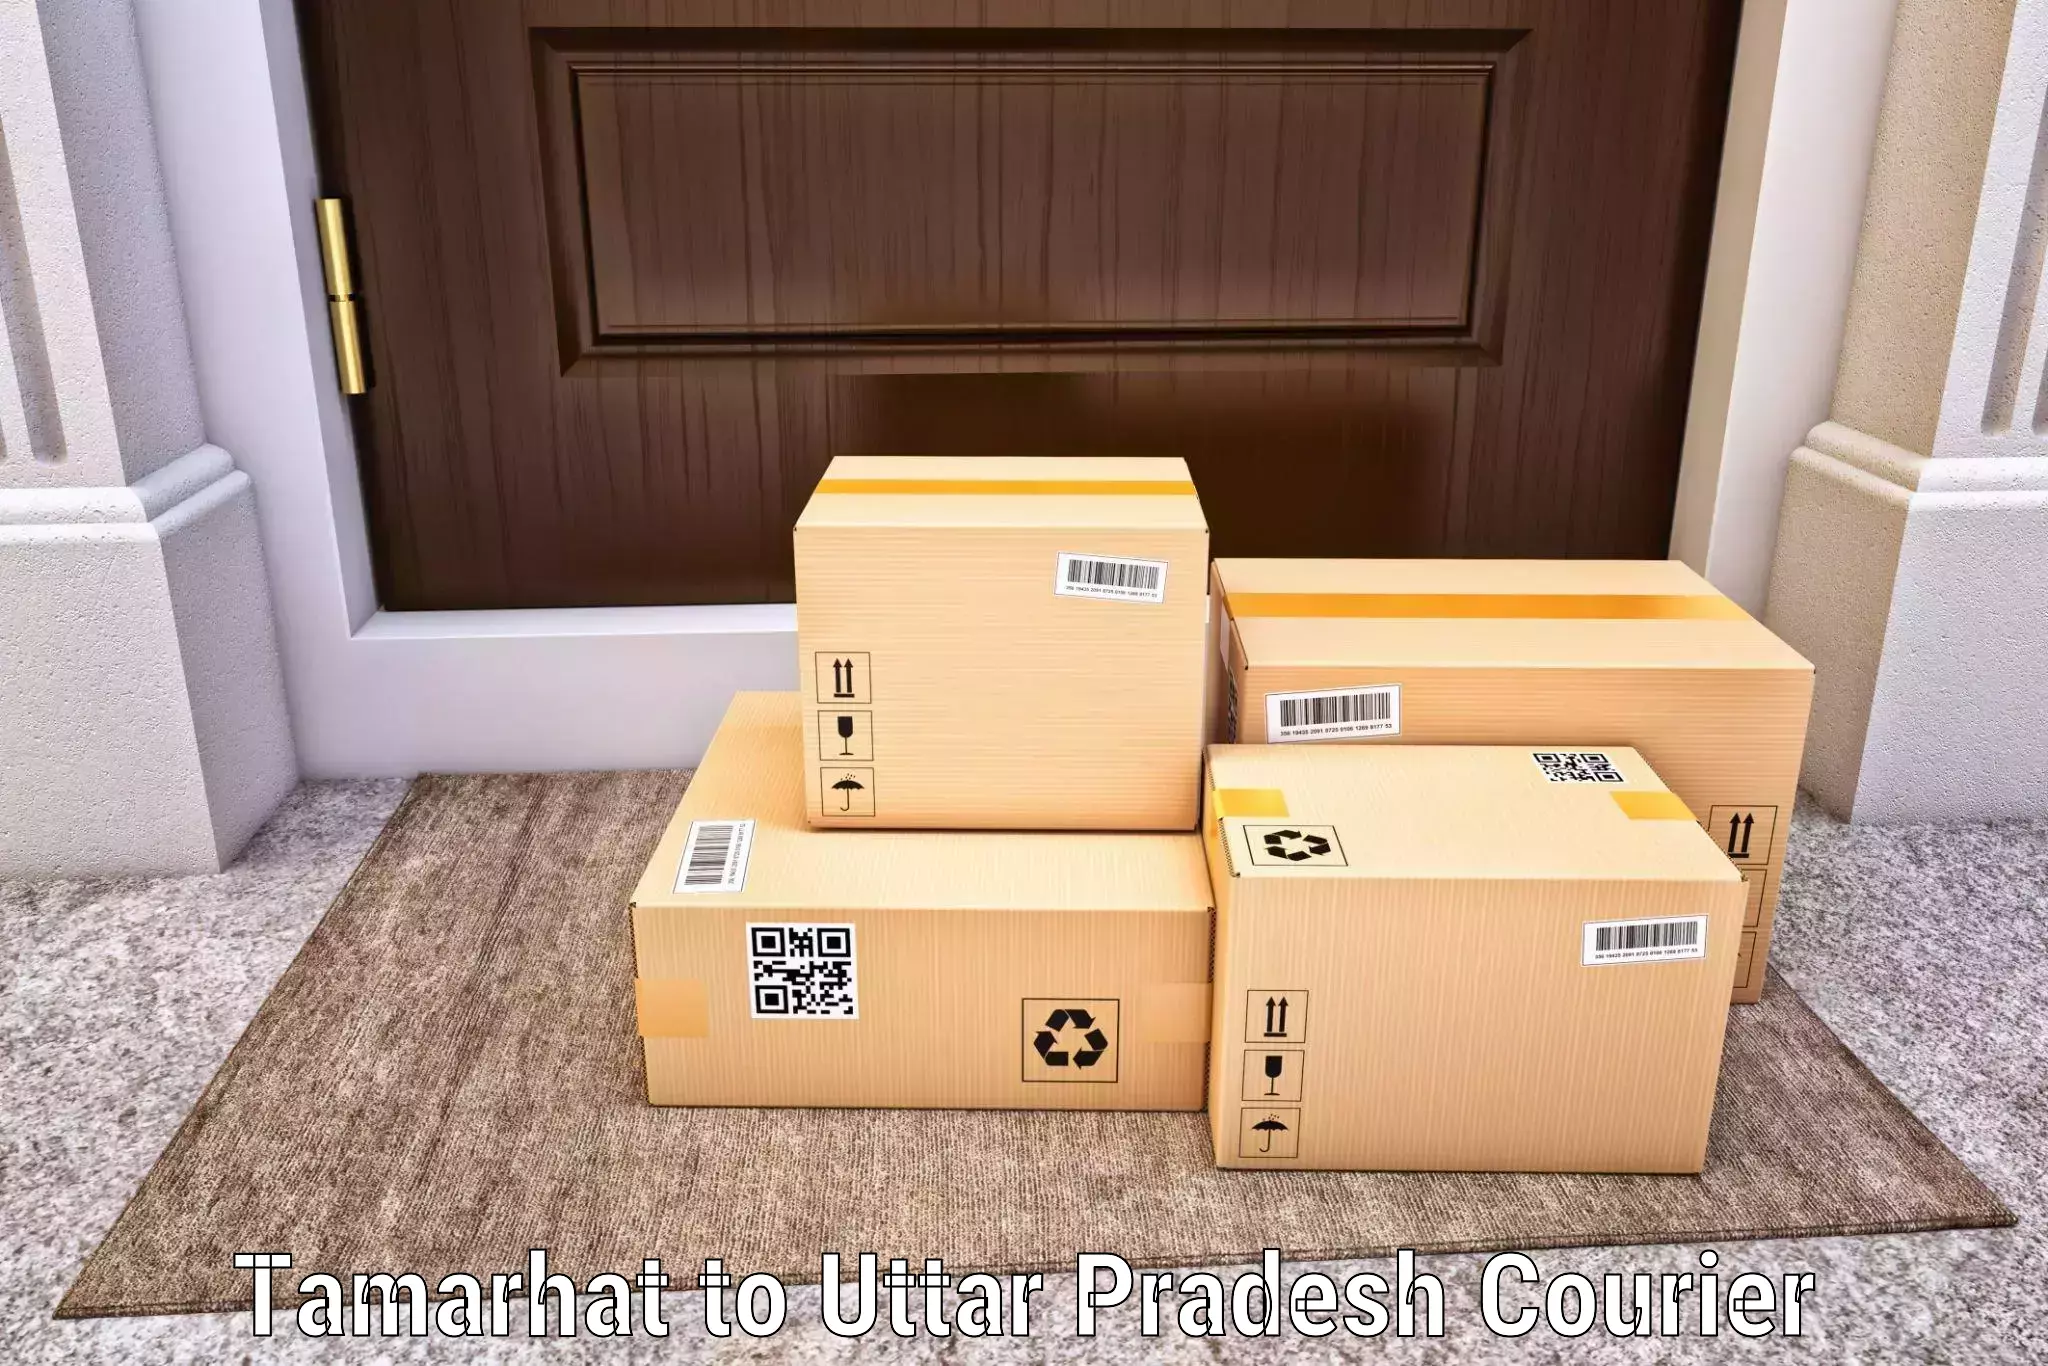 Customer-friendly courier services Tamarhat to Uttar Pradesh